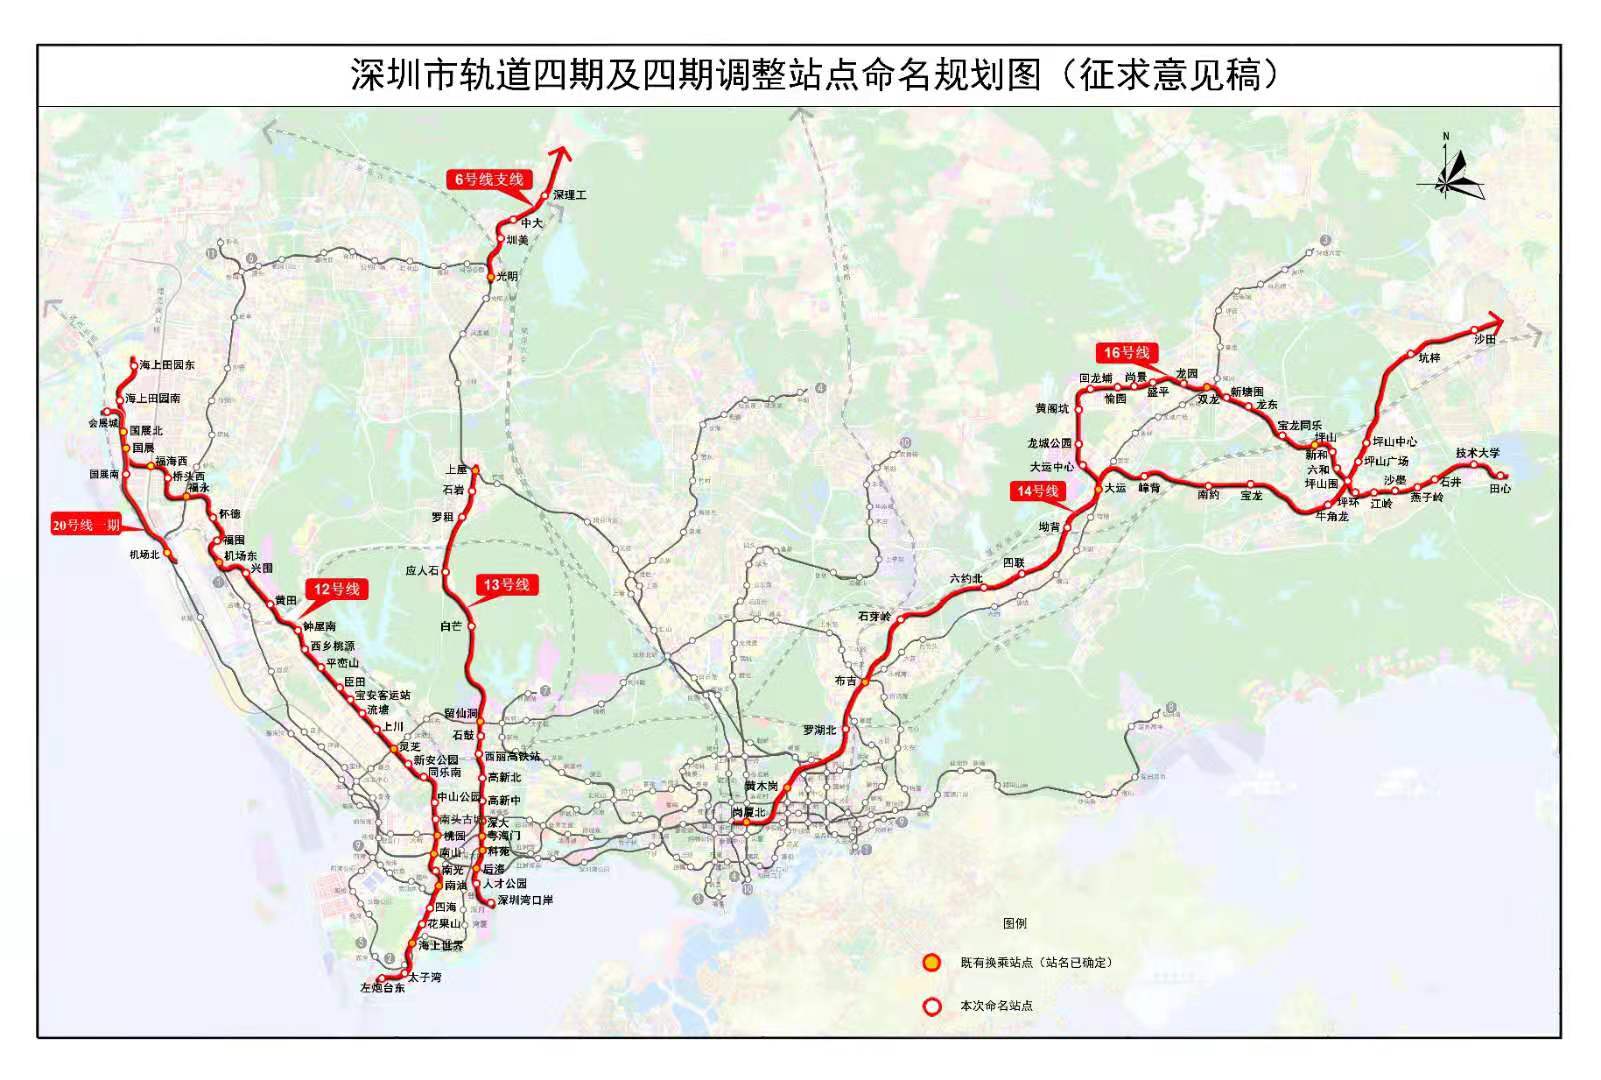 站名规划方案已拟定,深圳这6条地铁线96个站点名称公示中